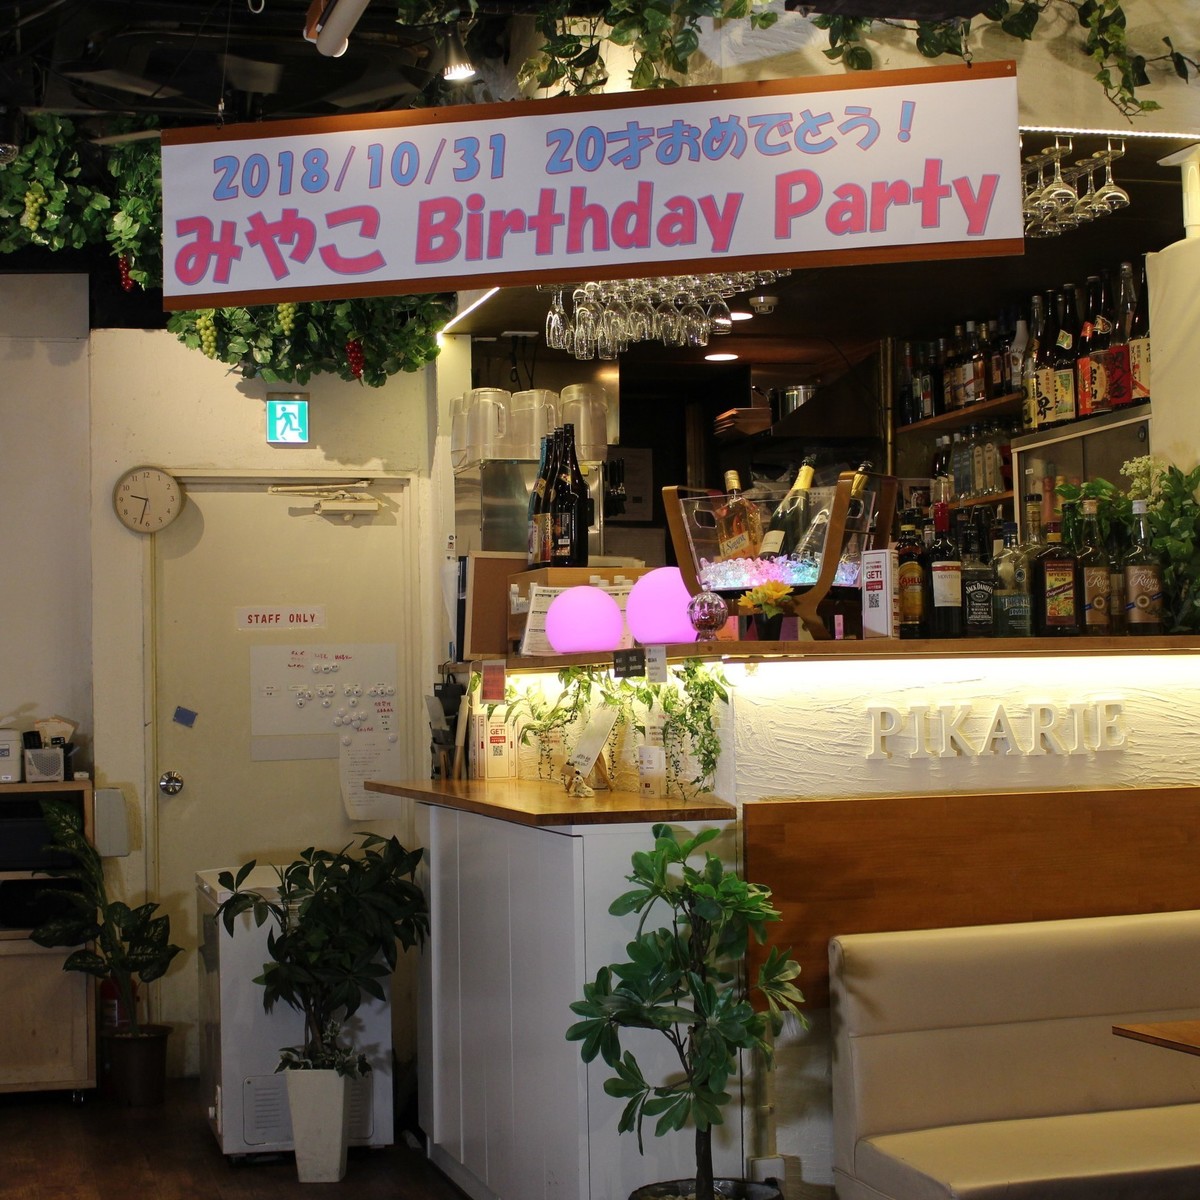 涩谷包租促销派对如果是你的生日，你可以获得带有包租特权的横幅♪